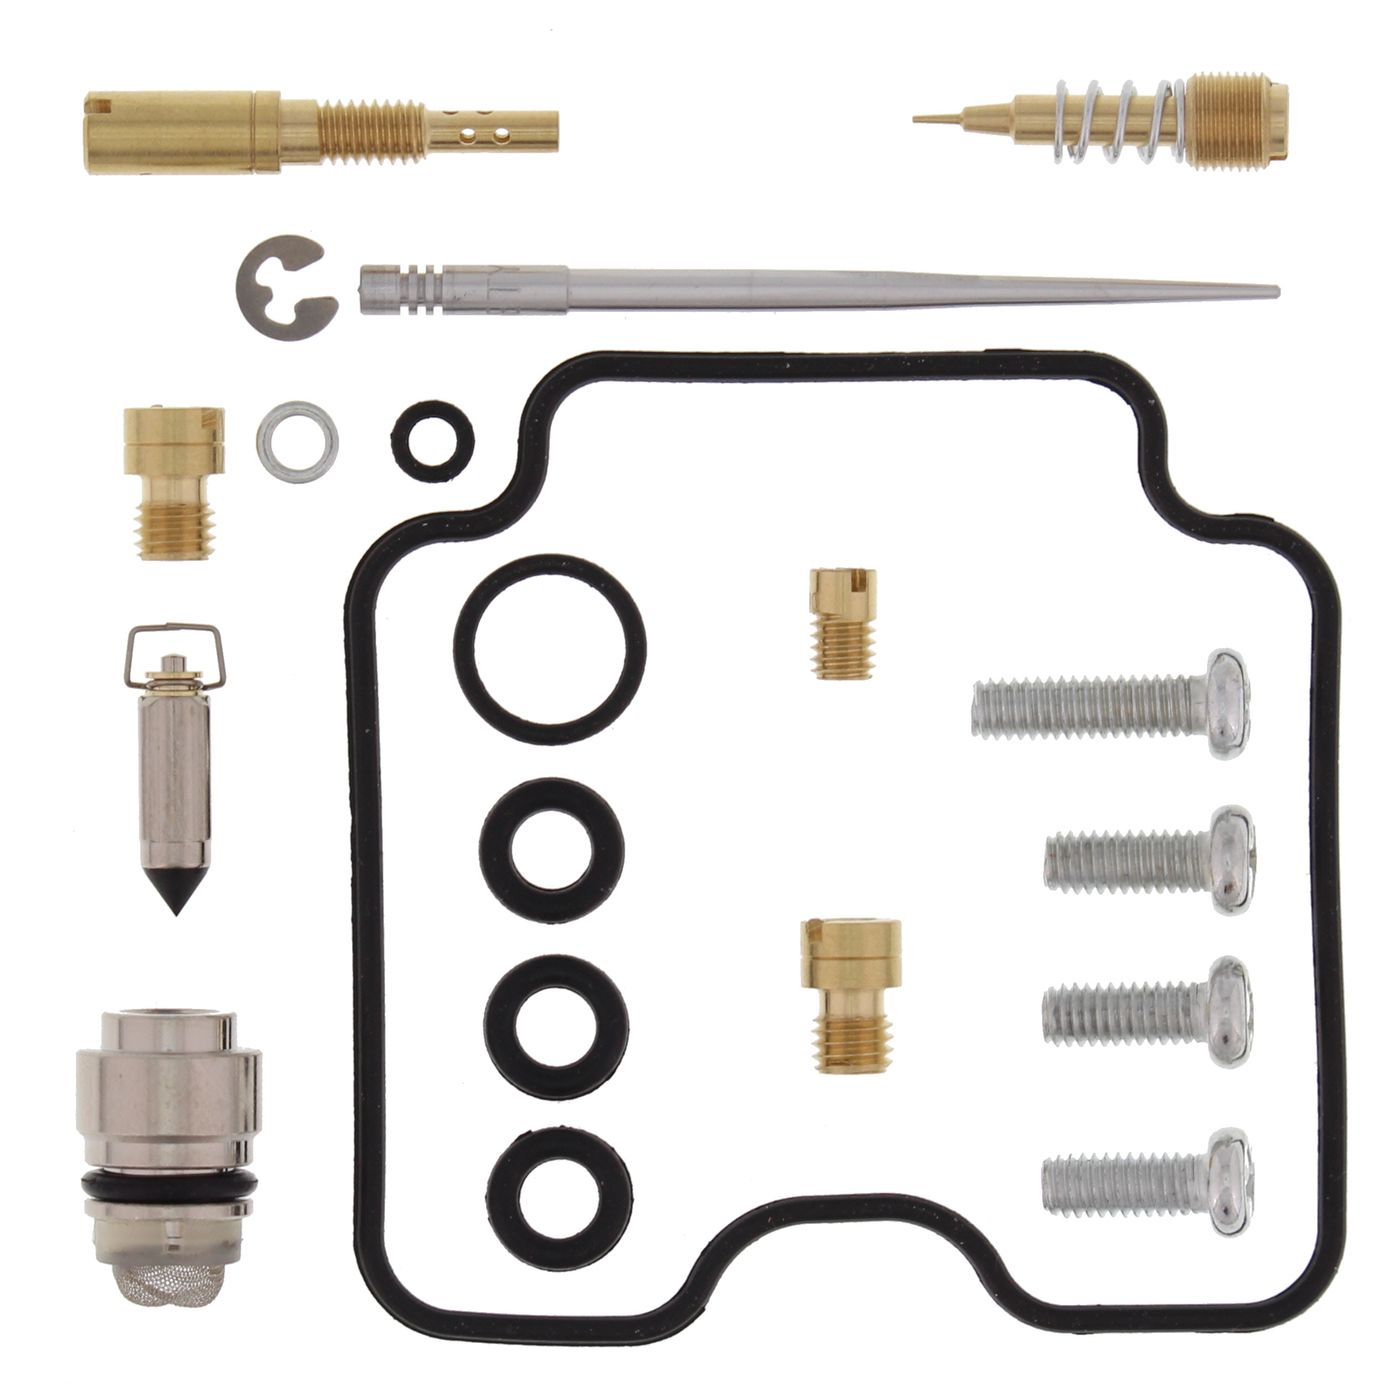 Wrp Carb Repair Kits - WRP261254 image